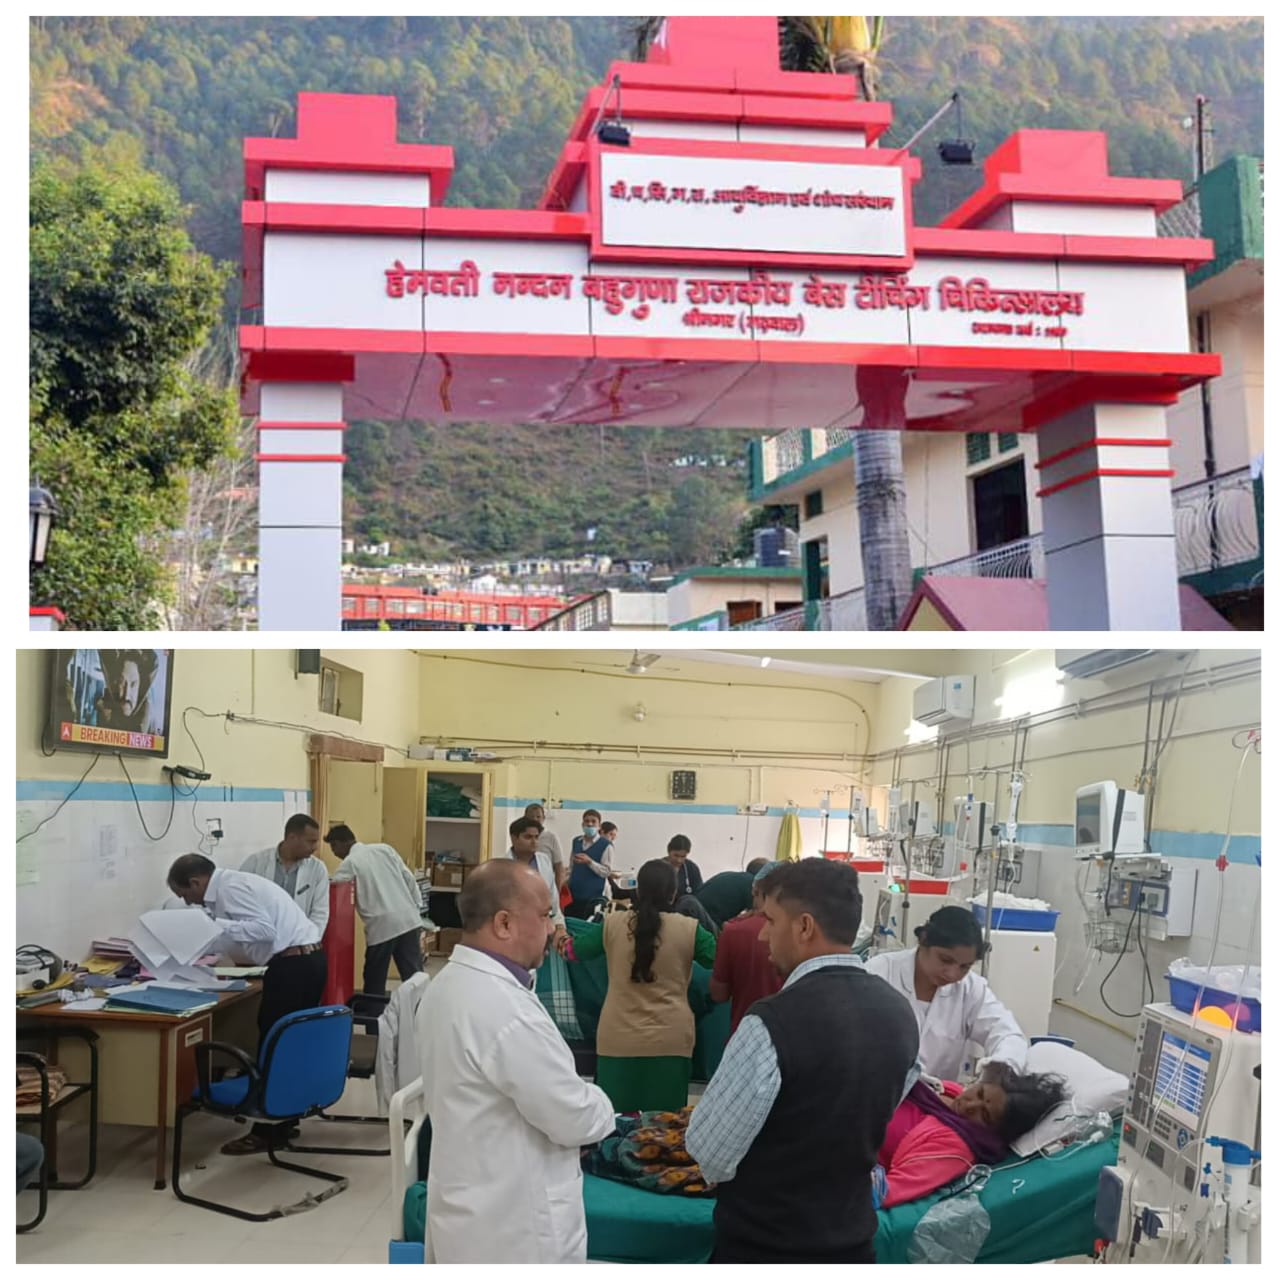 श्रीनगर बेस अस्पताल में छह के बजाय 12 घंटे मिलेगी डायलिसिस सुविधा